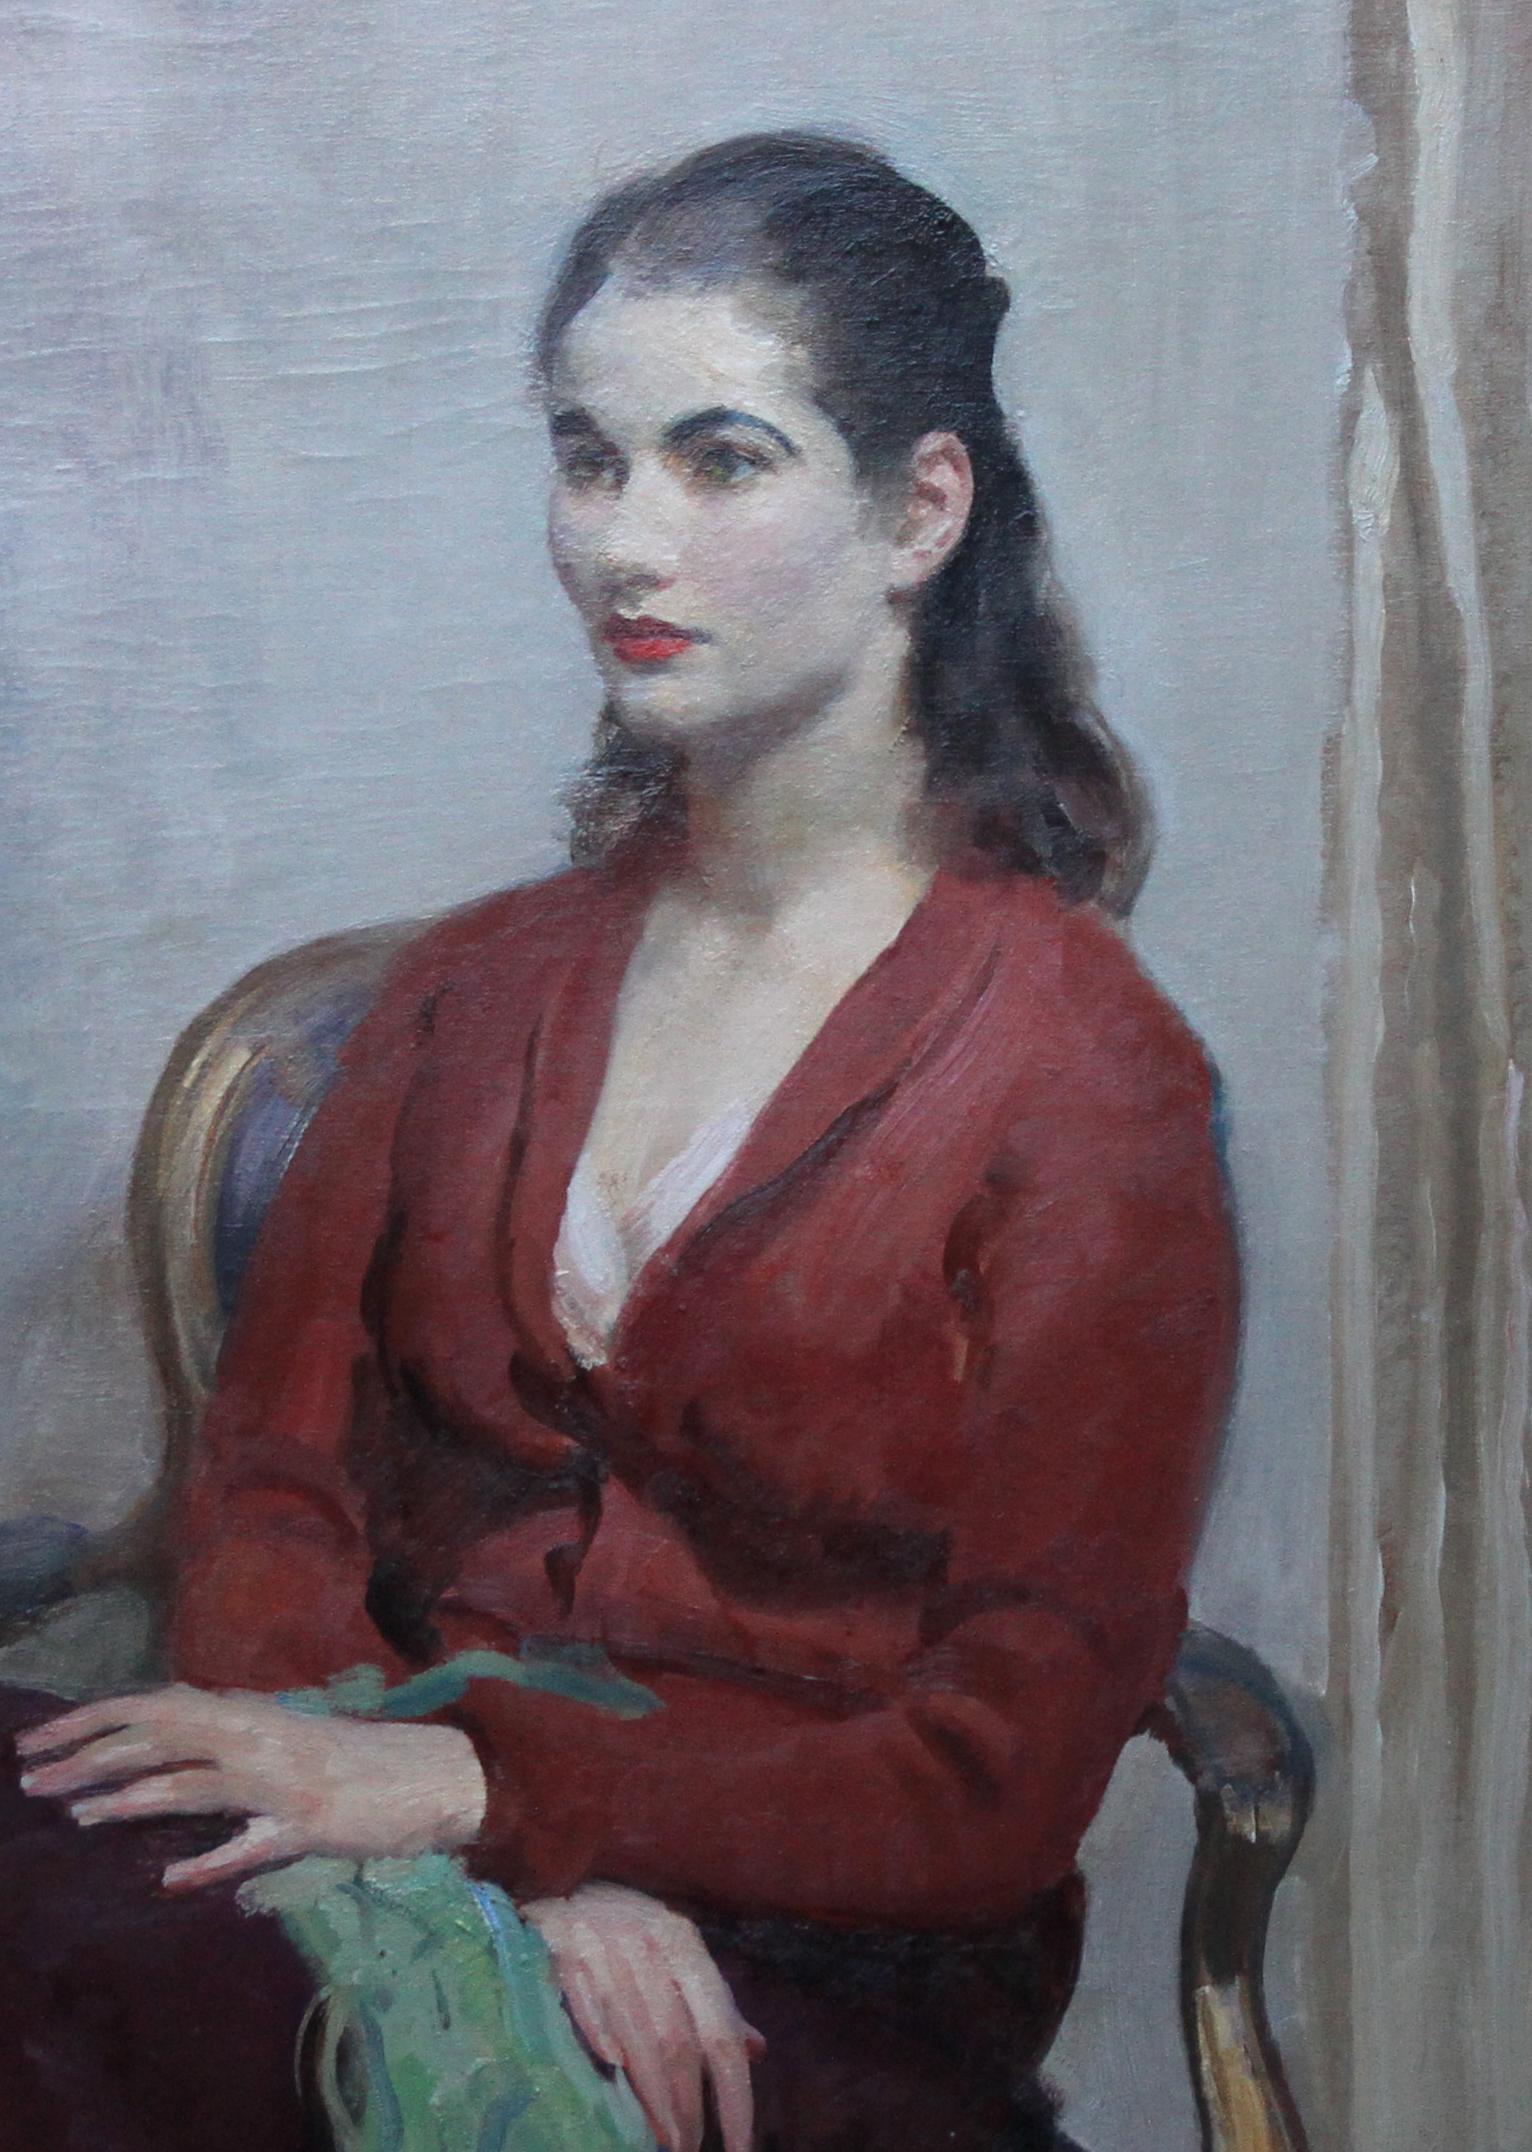 Portrait de jeune femme en rouge - Peinture à l'huile impressionniste britannique des années 20 - intérieur - Impressionnisme Painting par Walter Ernest Webster